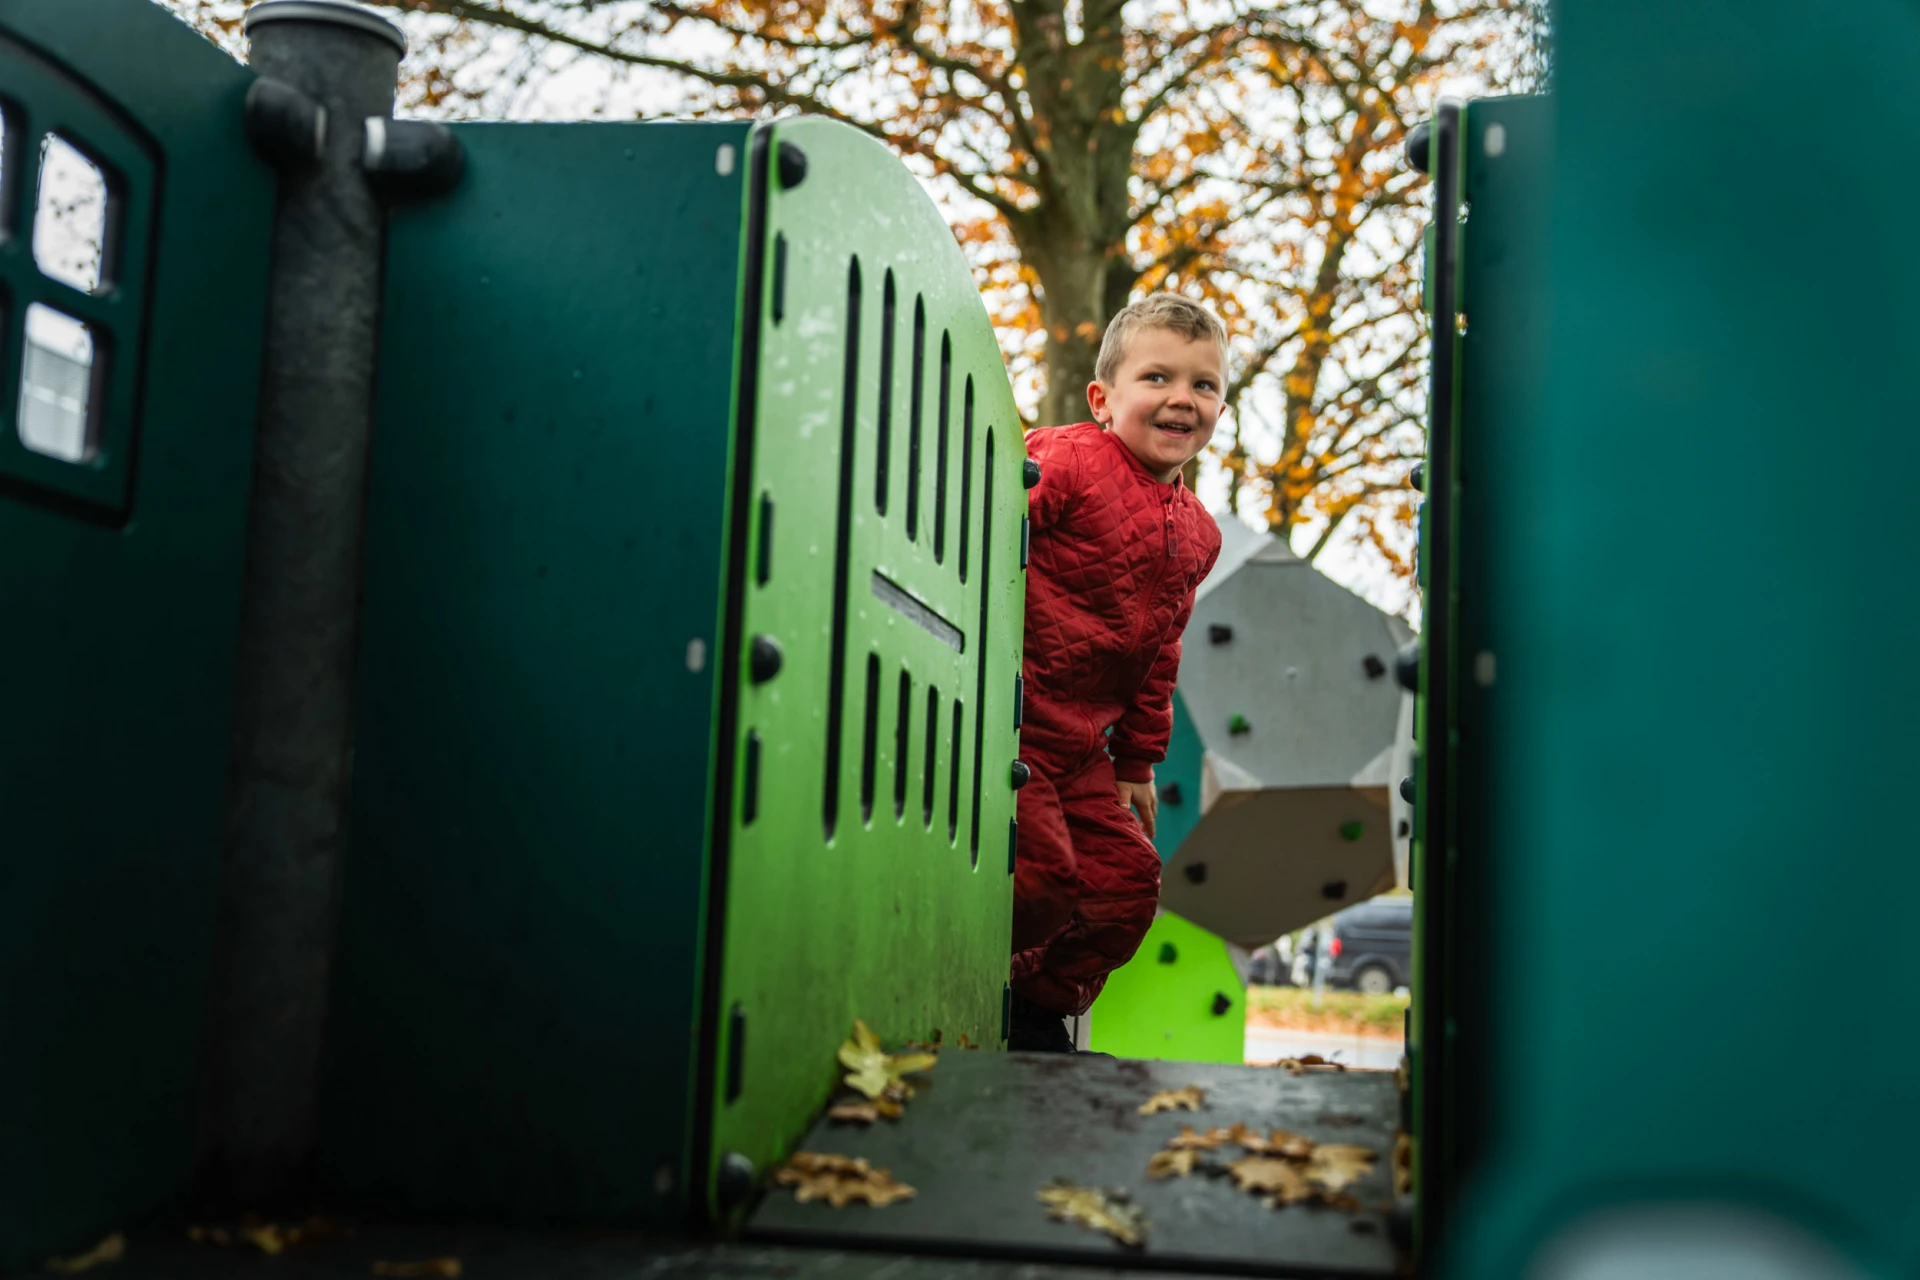 Bambino vestito di rosso che gioca su una struttura verde del parco giochi